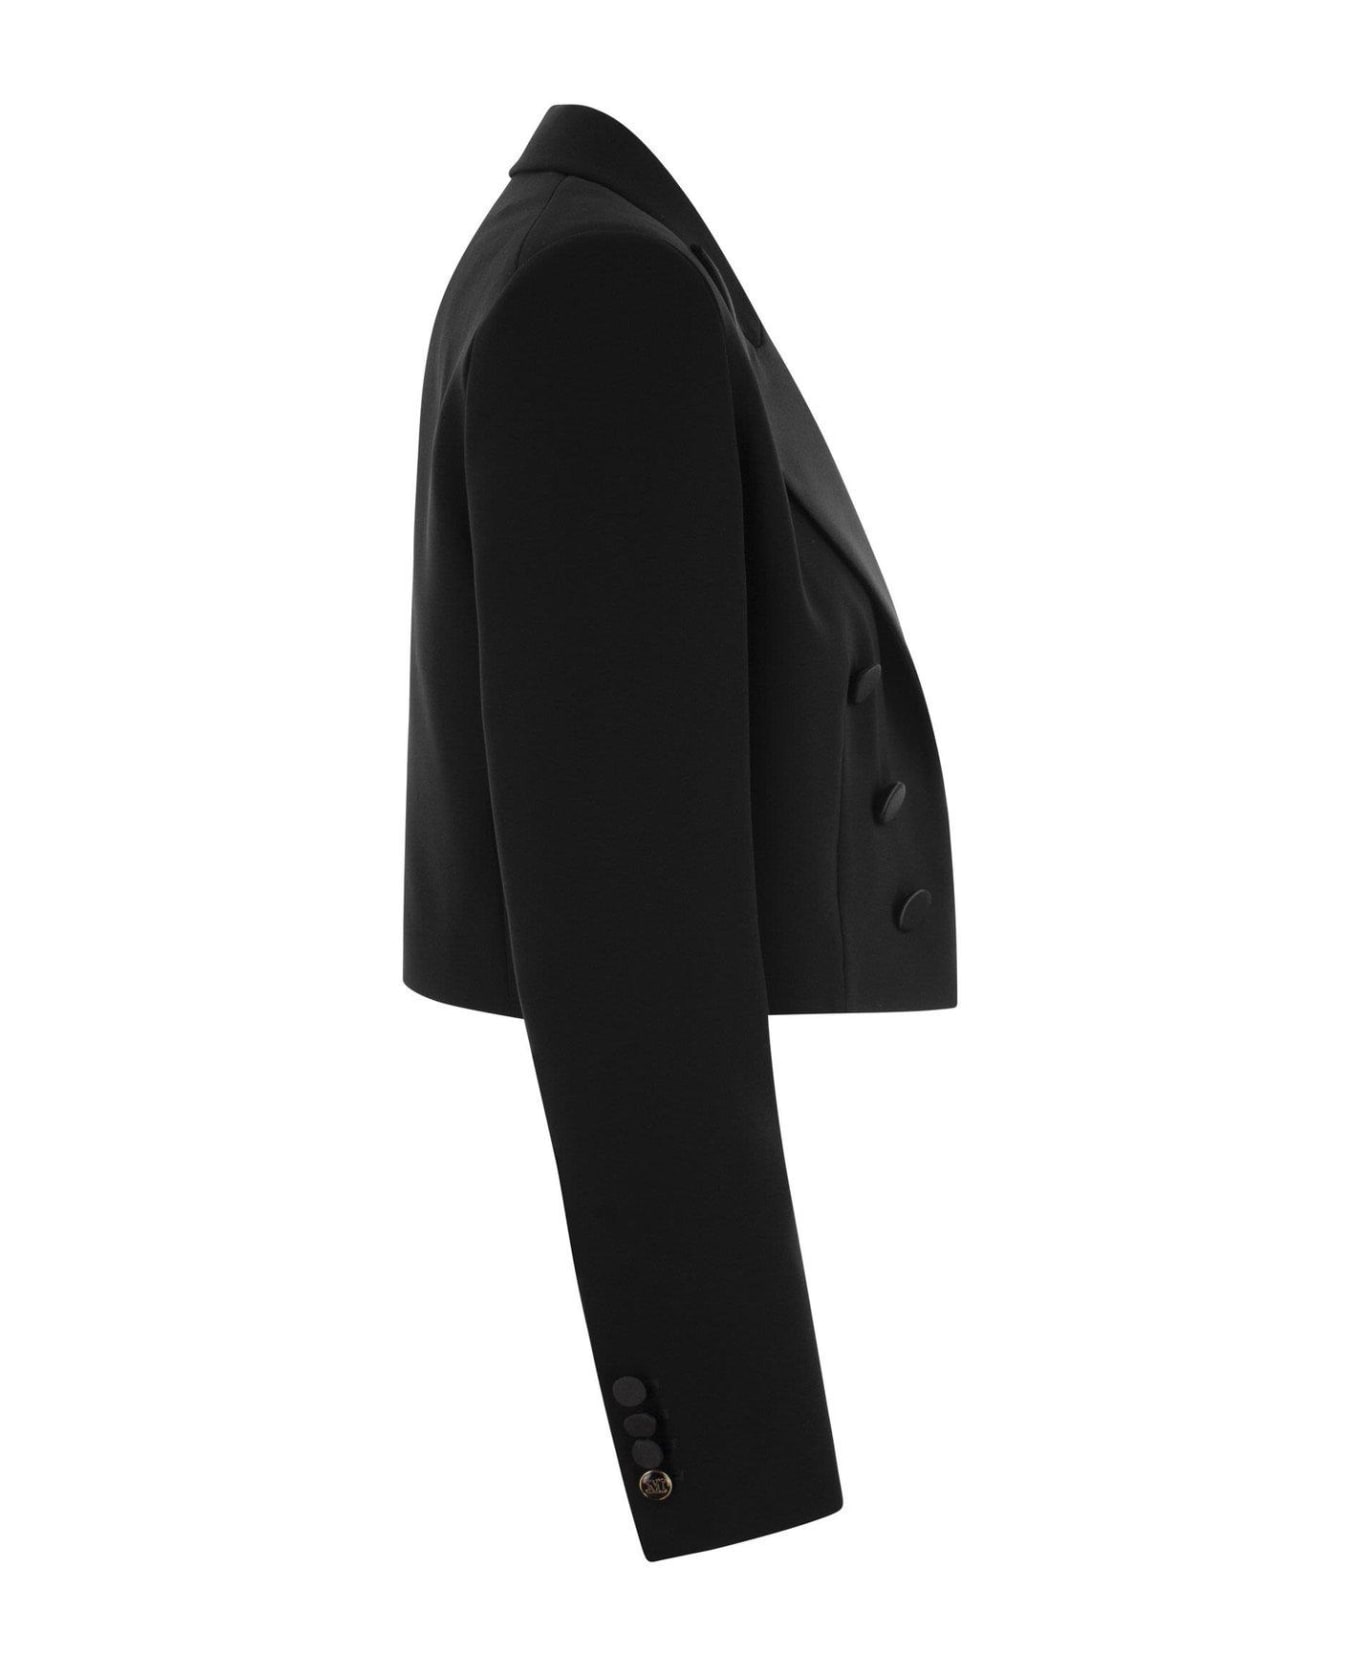 Max Mara Pianoforte Double-breasted Long-sleeved Jacket - Black